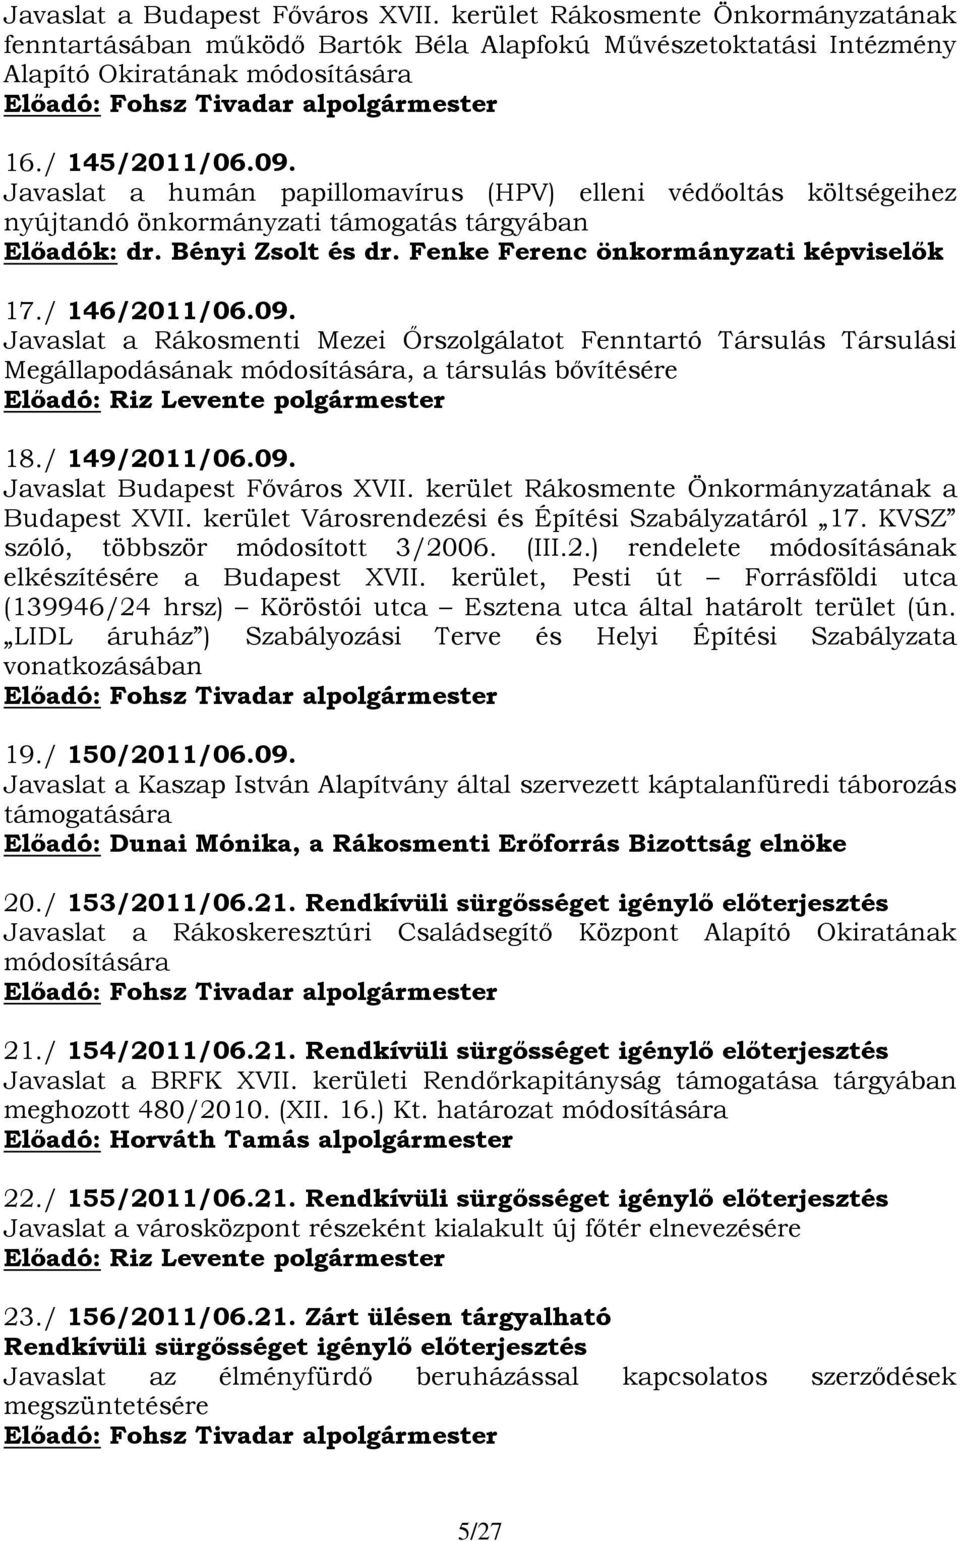 09. Javaslat a Rákosmenti Mezei Őrszolgálatot Fenntartó Társulás Társulási Megállapodásának módosítására, a társulás bővítésére 18./ 149/2011/06.09. Javaslat a Budapest XVII.